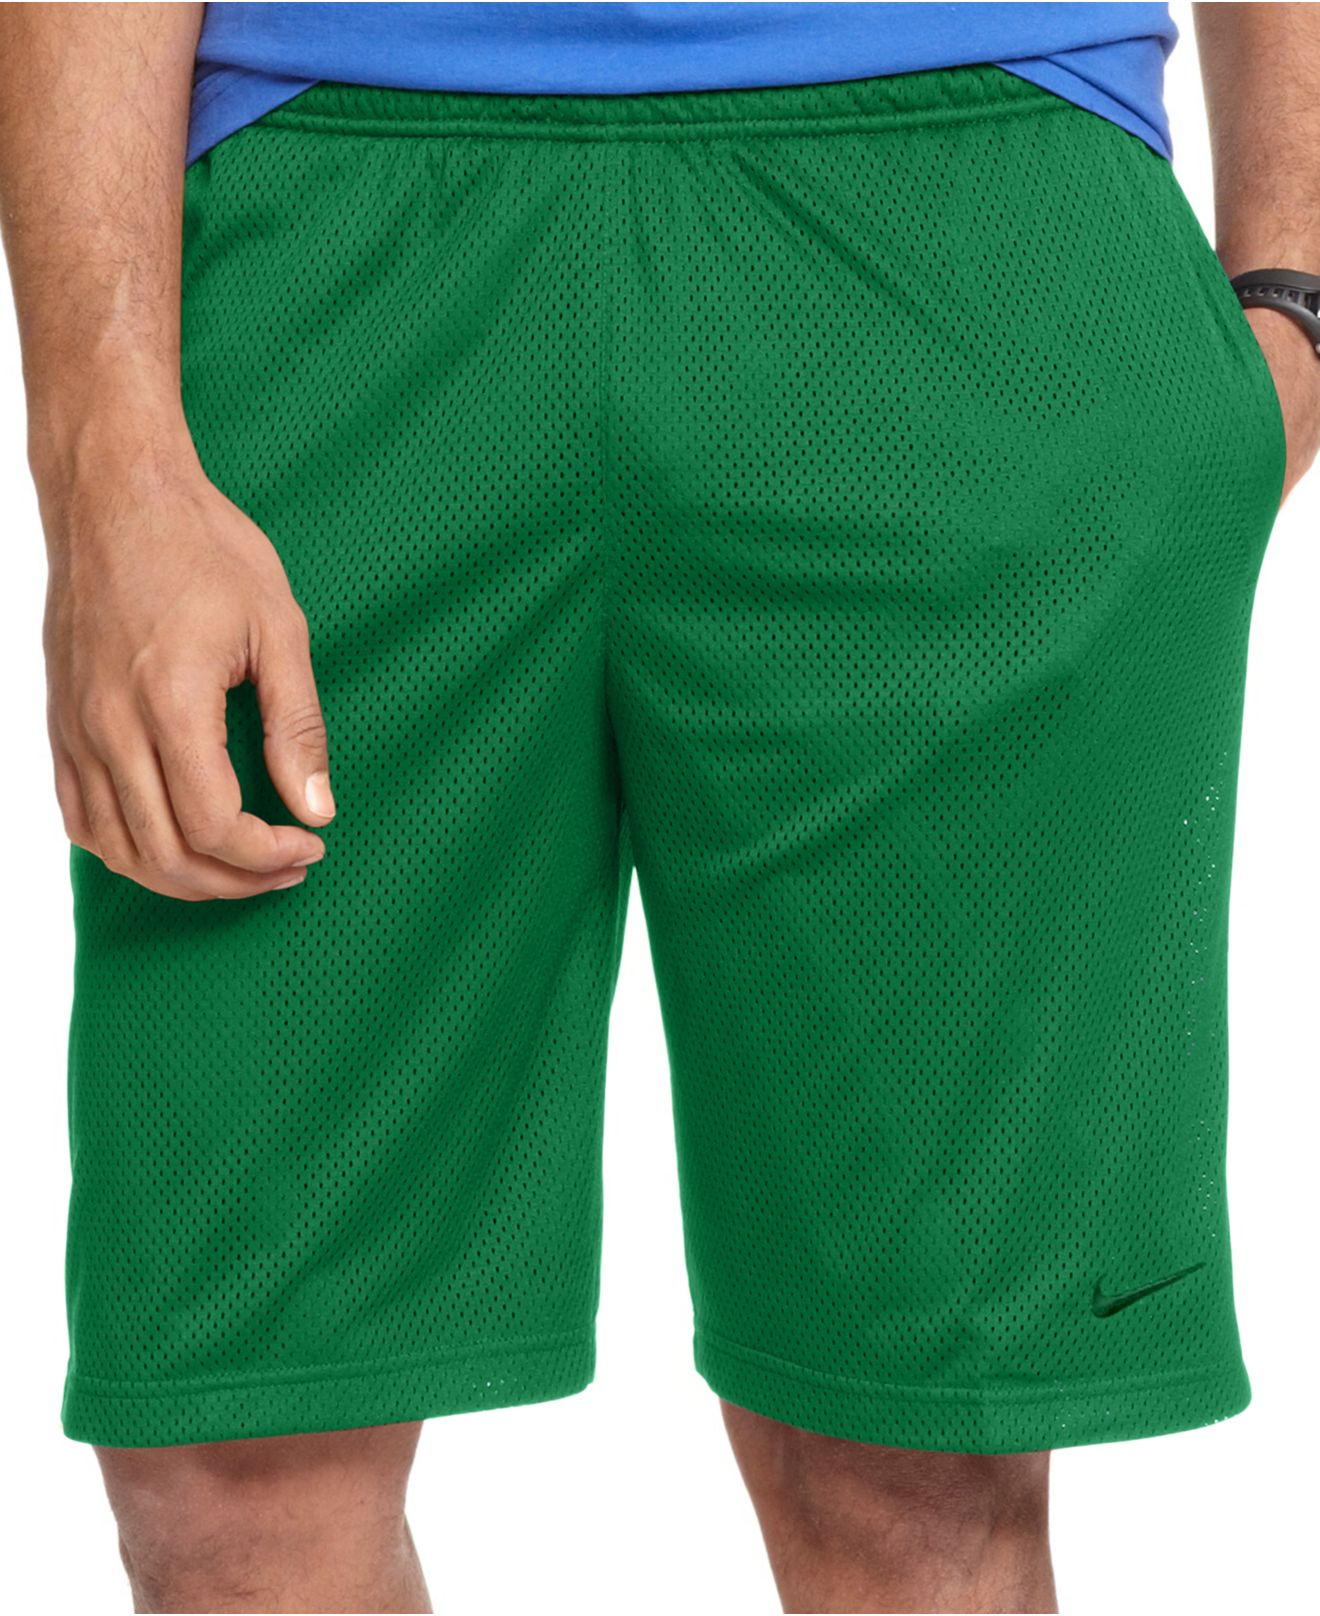 nike dri fit shorts green